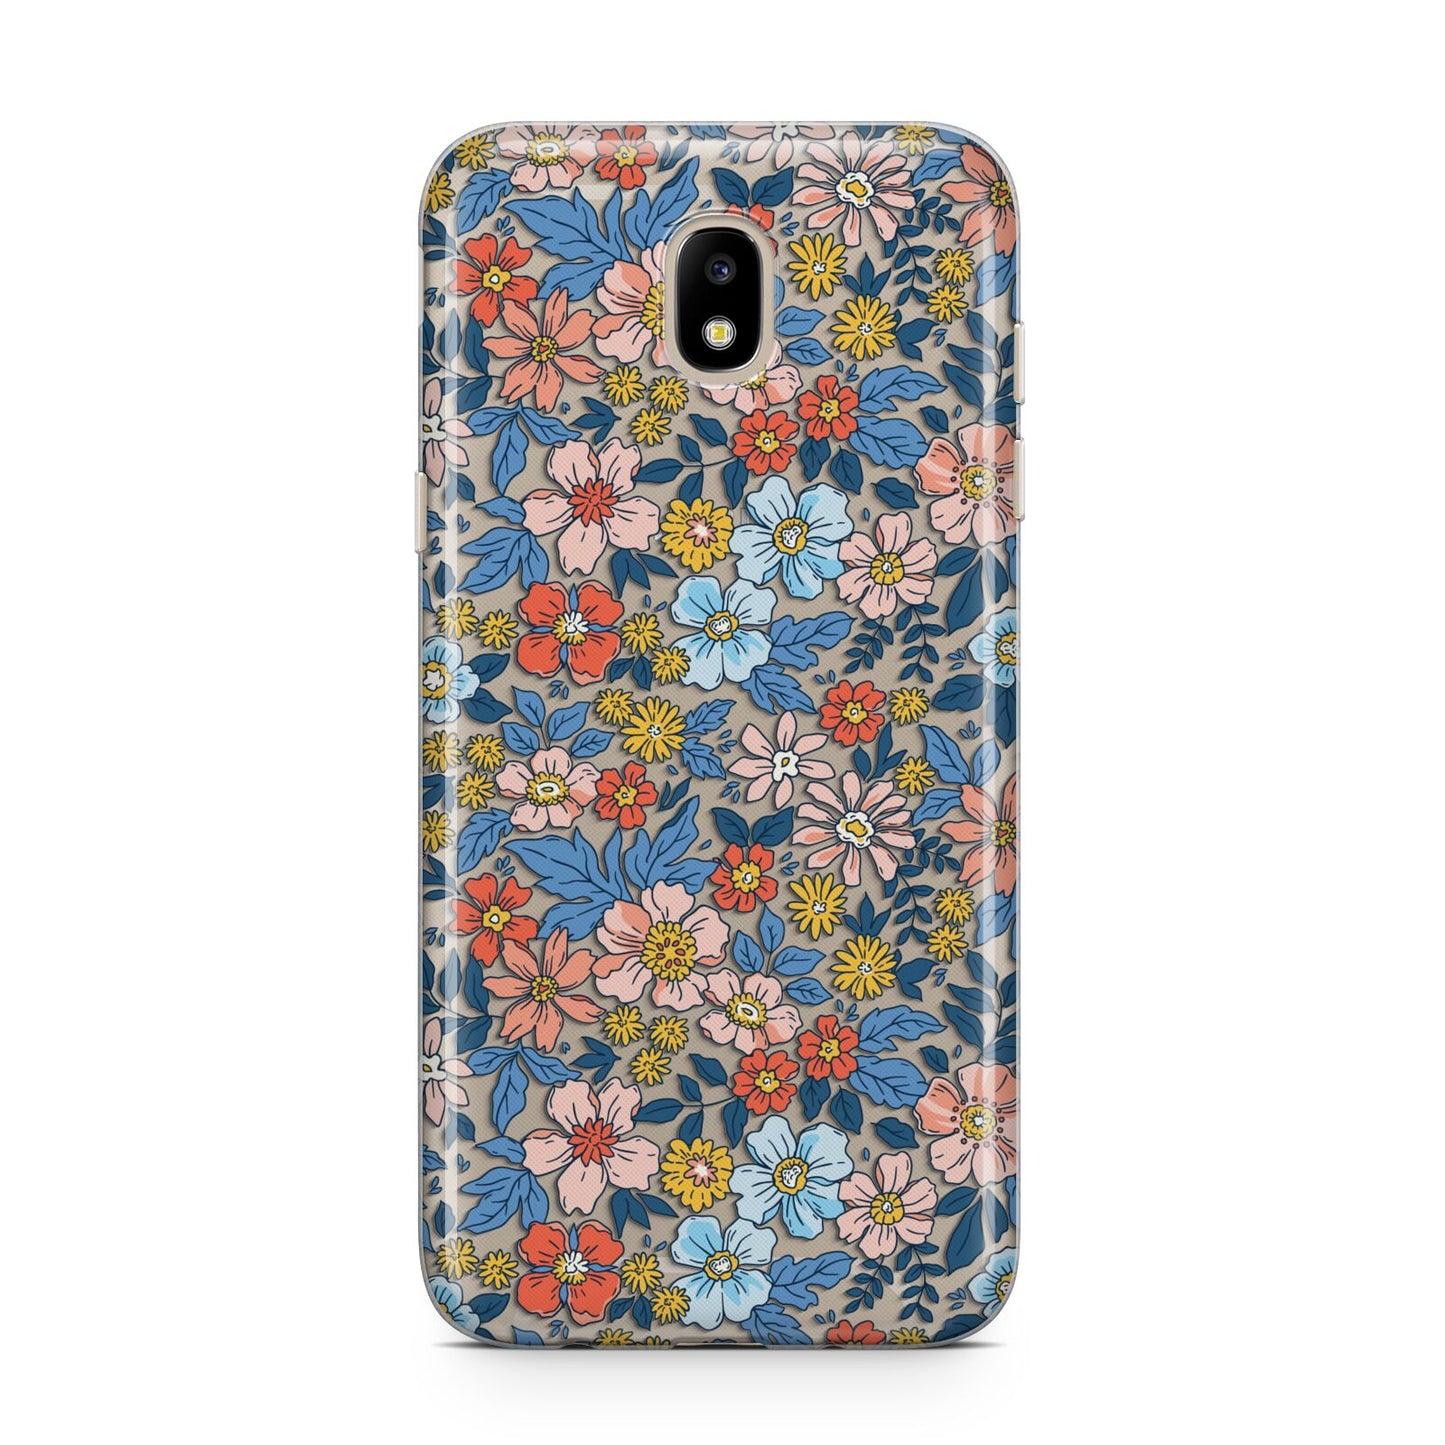 Vintage Flower Samsung J5 2017 Case